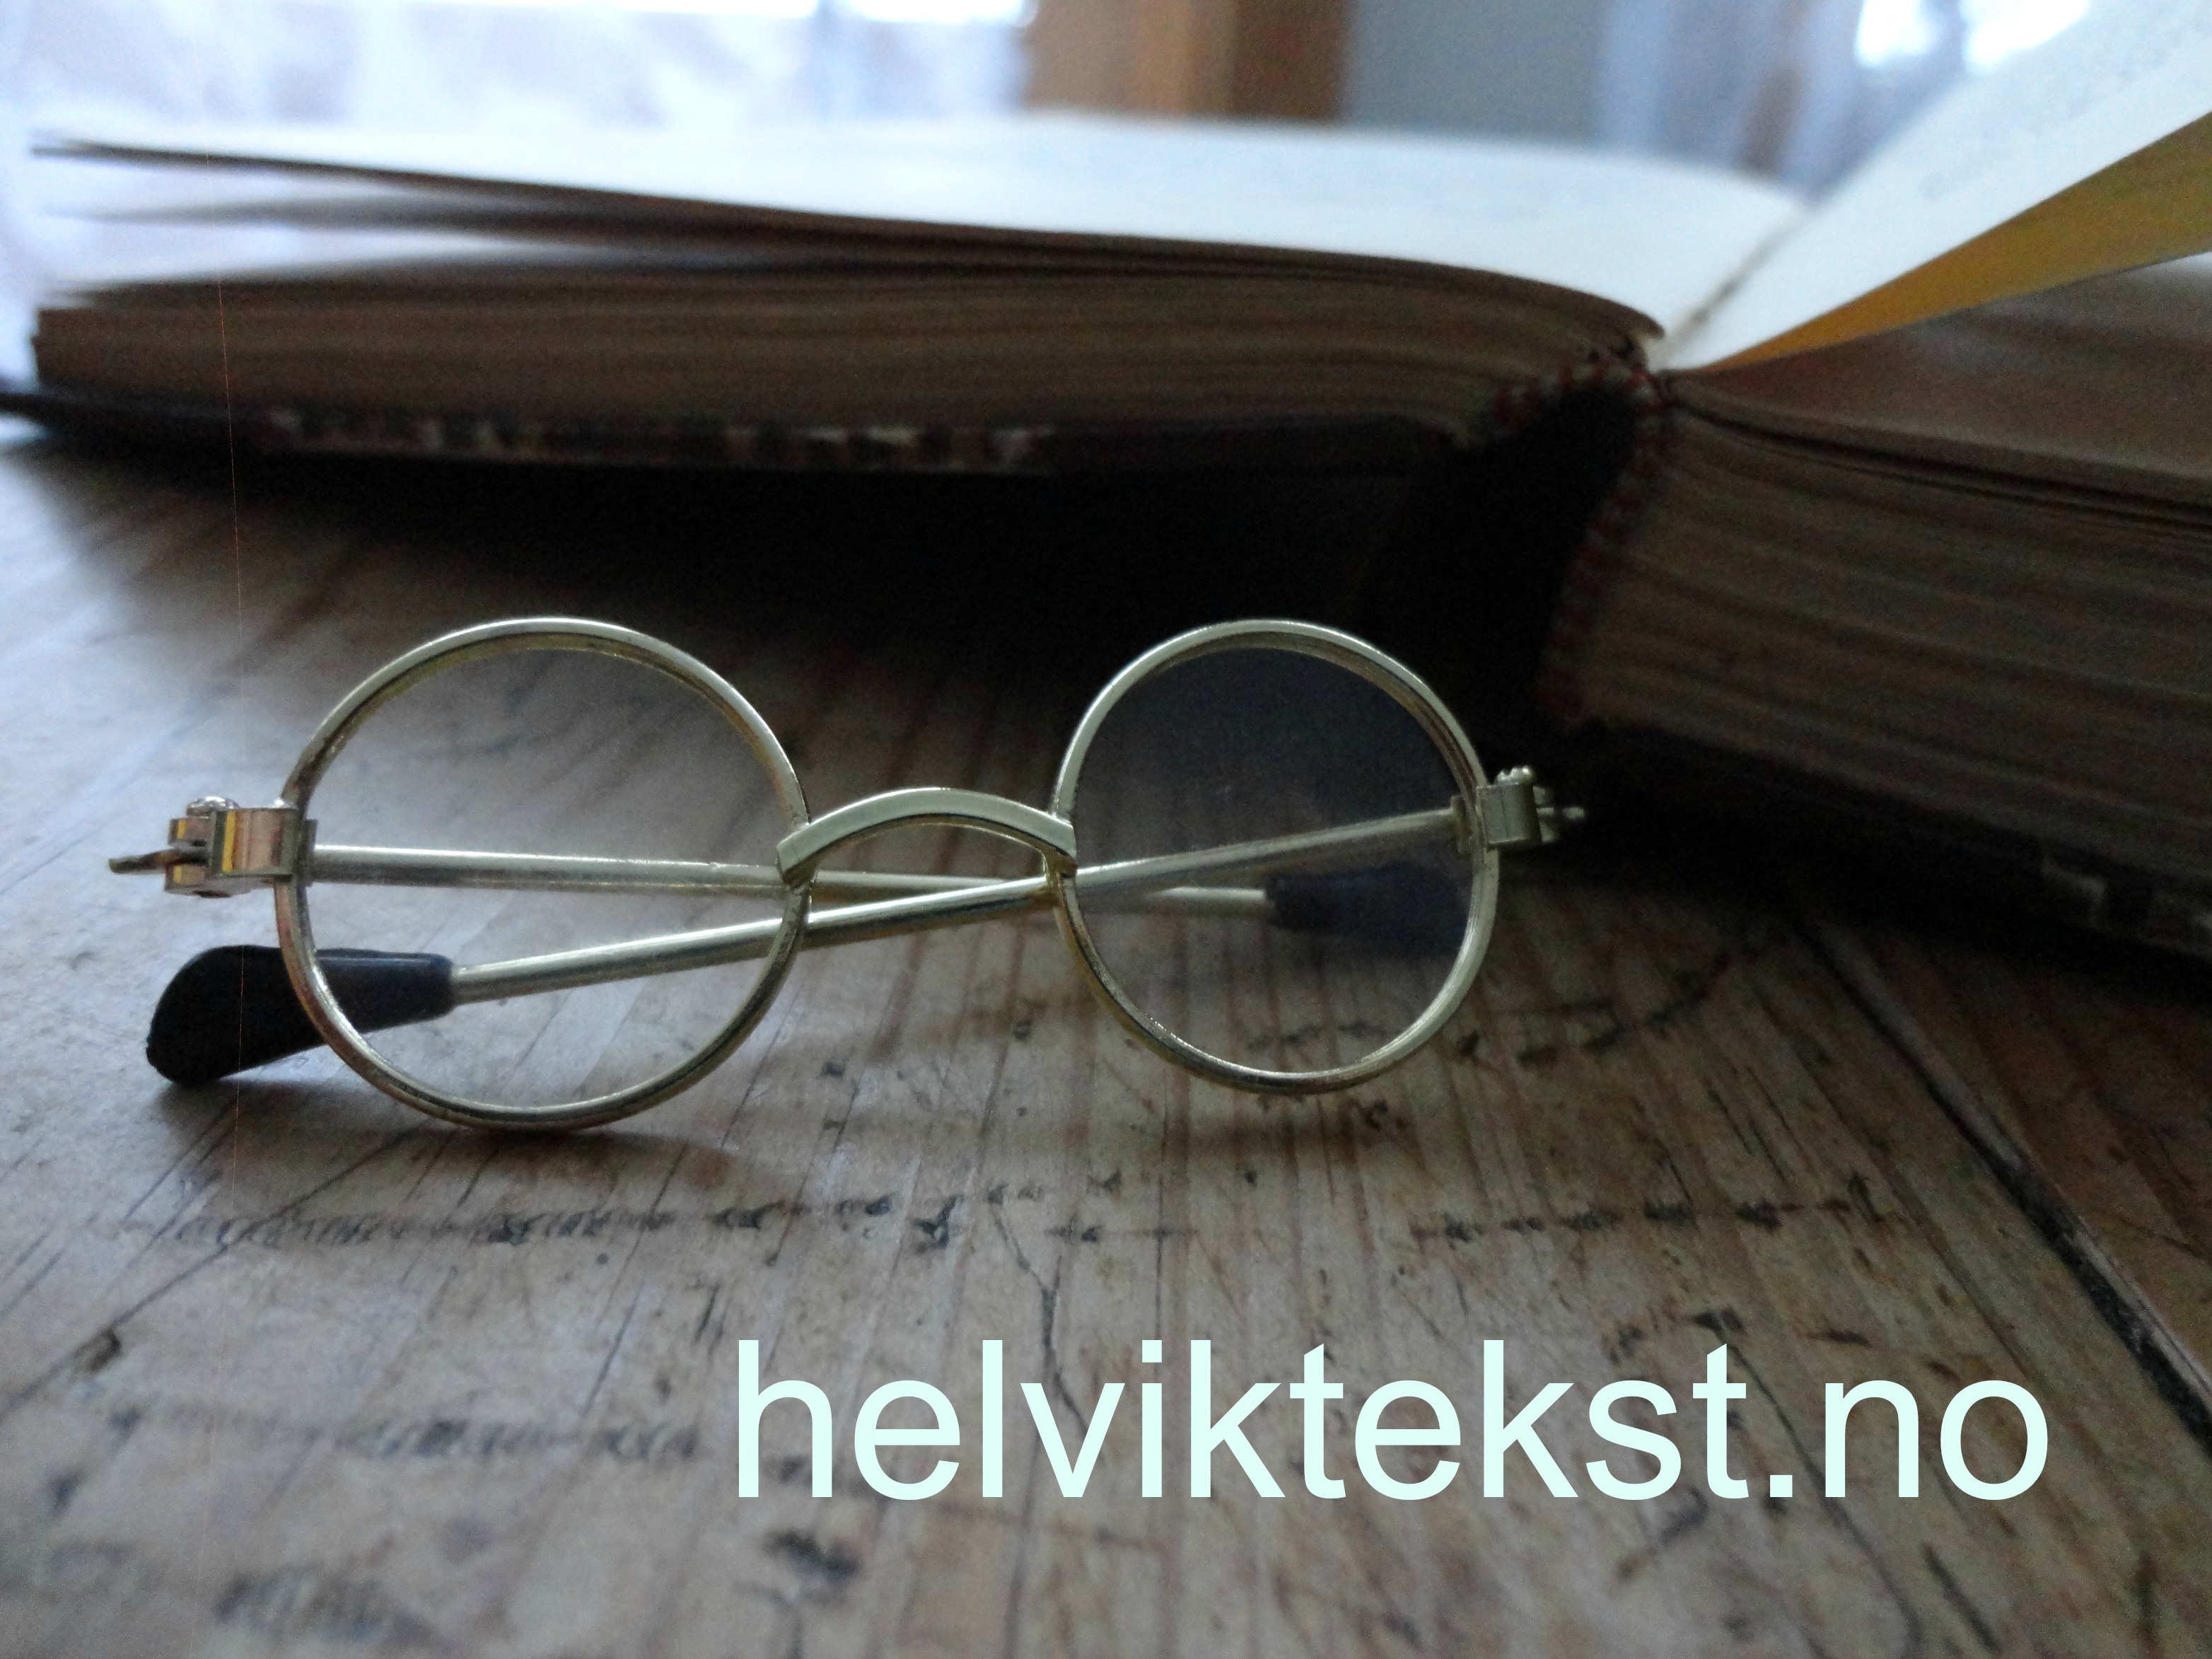 Bilete av nokre små briller i gamal stil framfor ei bok.